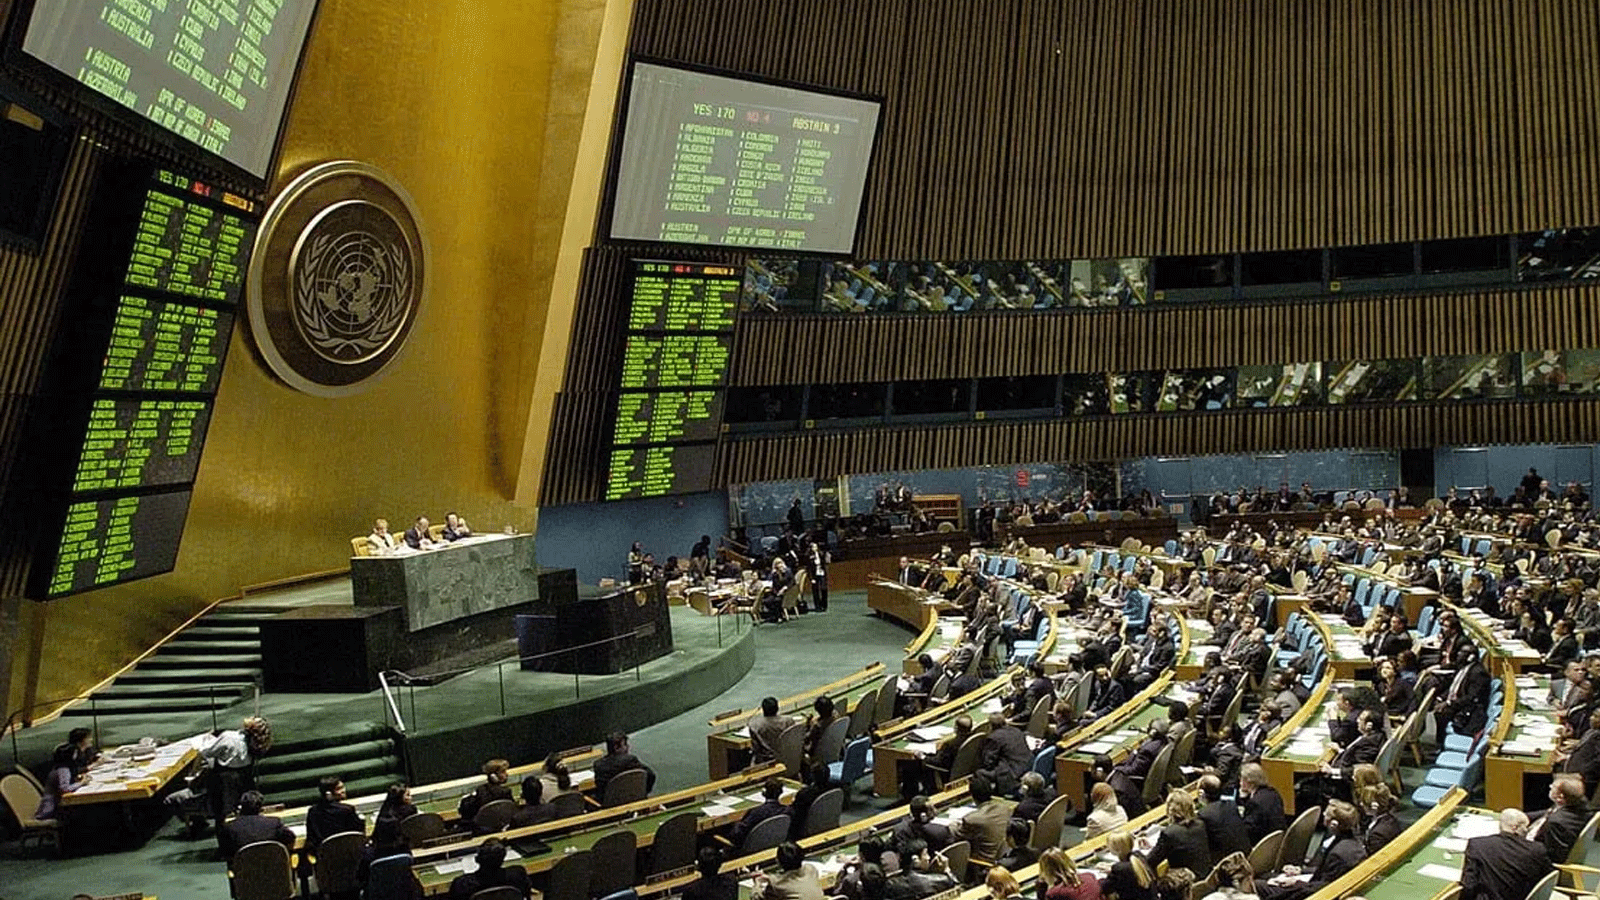 لقطة من جلسة الجمعية العامة للأمم المتحدة في مقر الأمم المتحدة بنيويورك